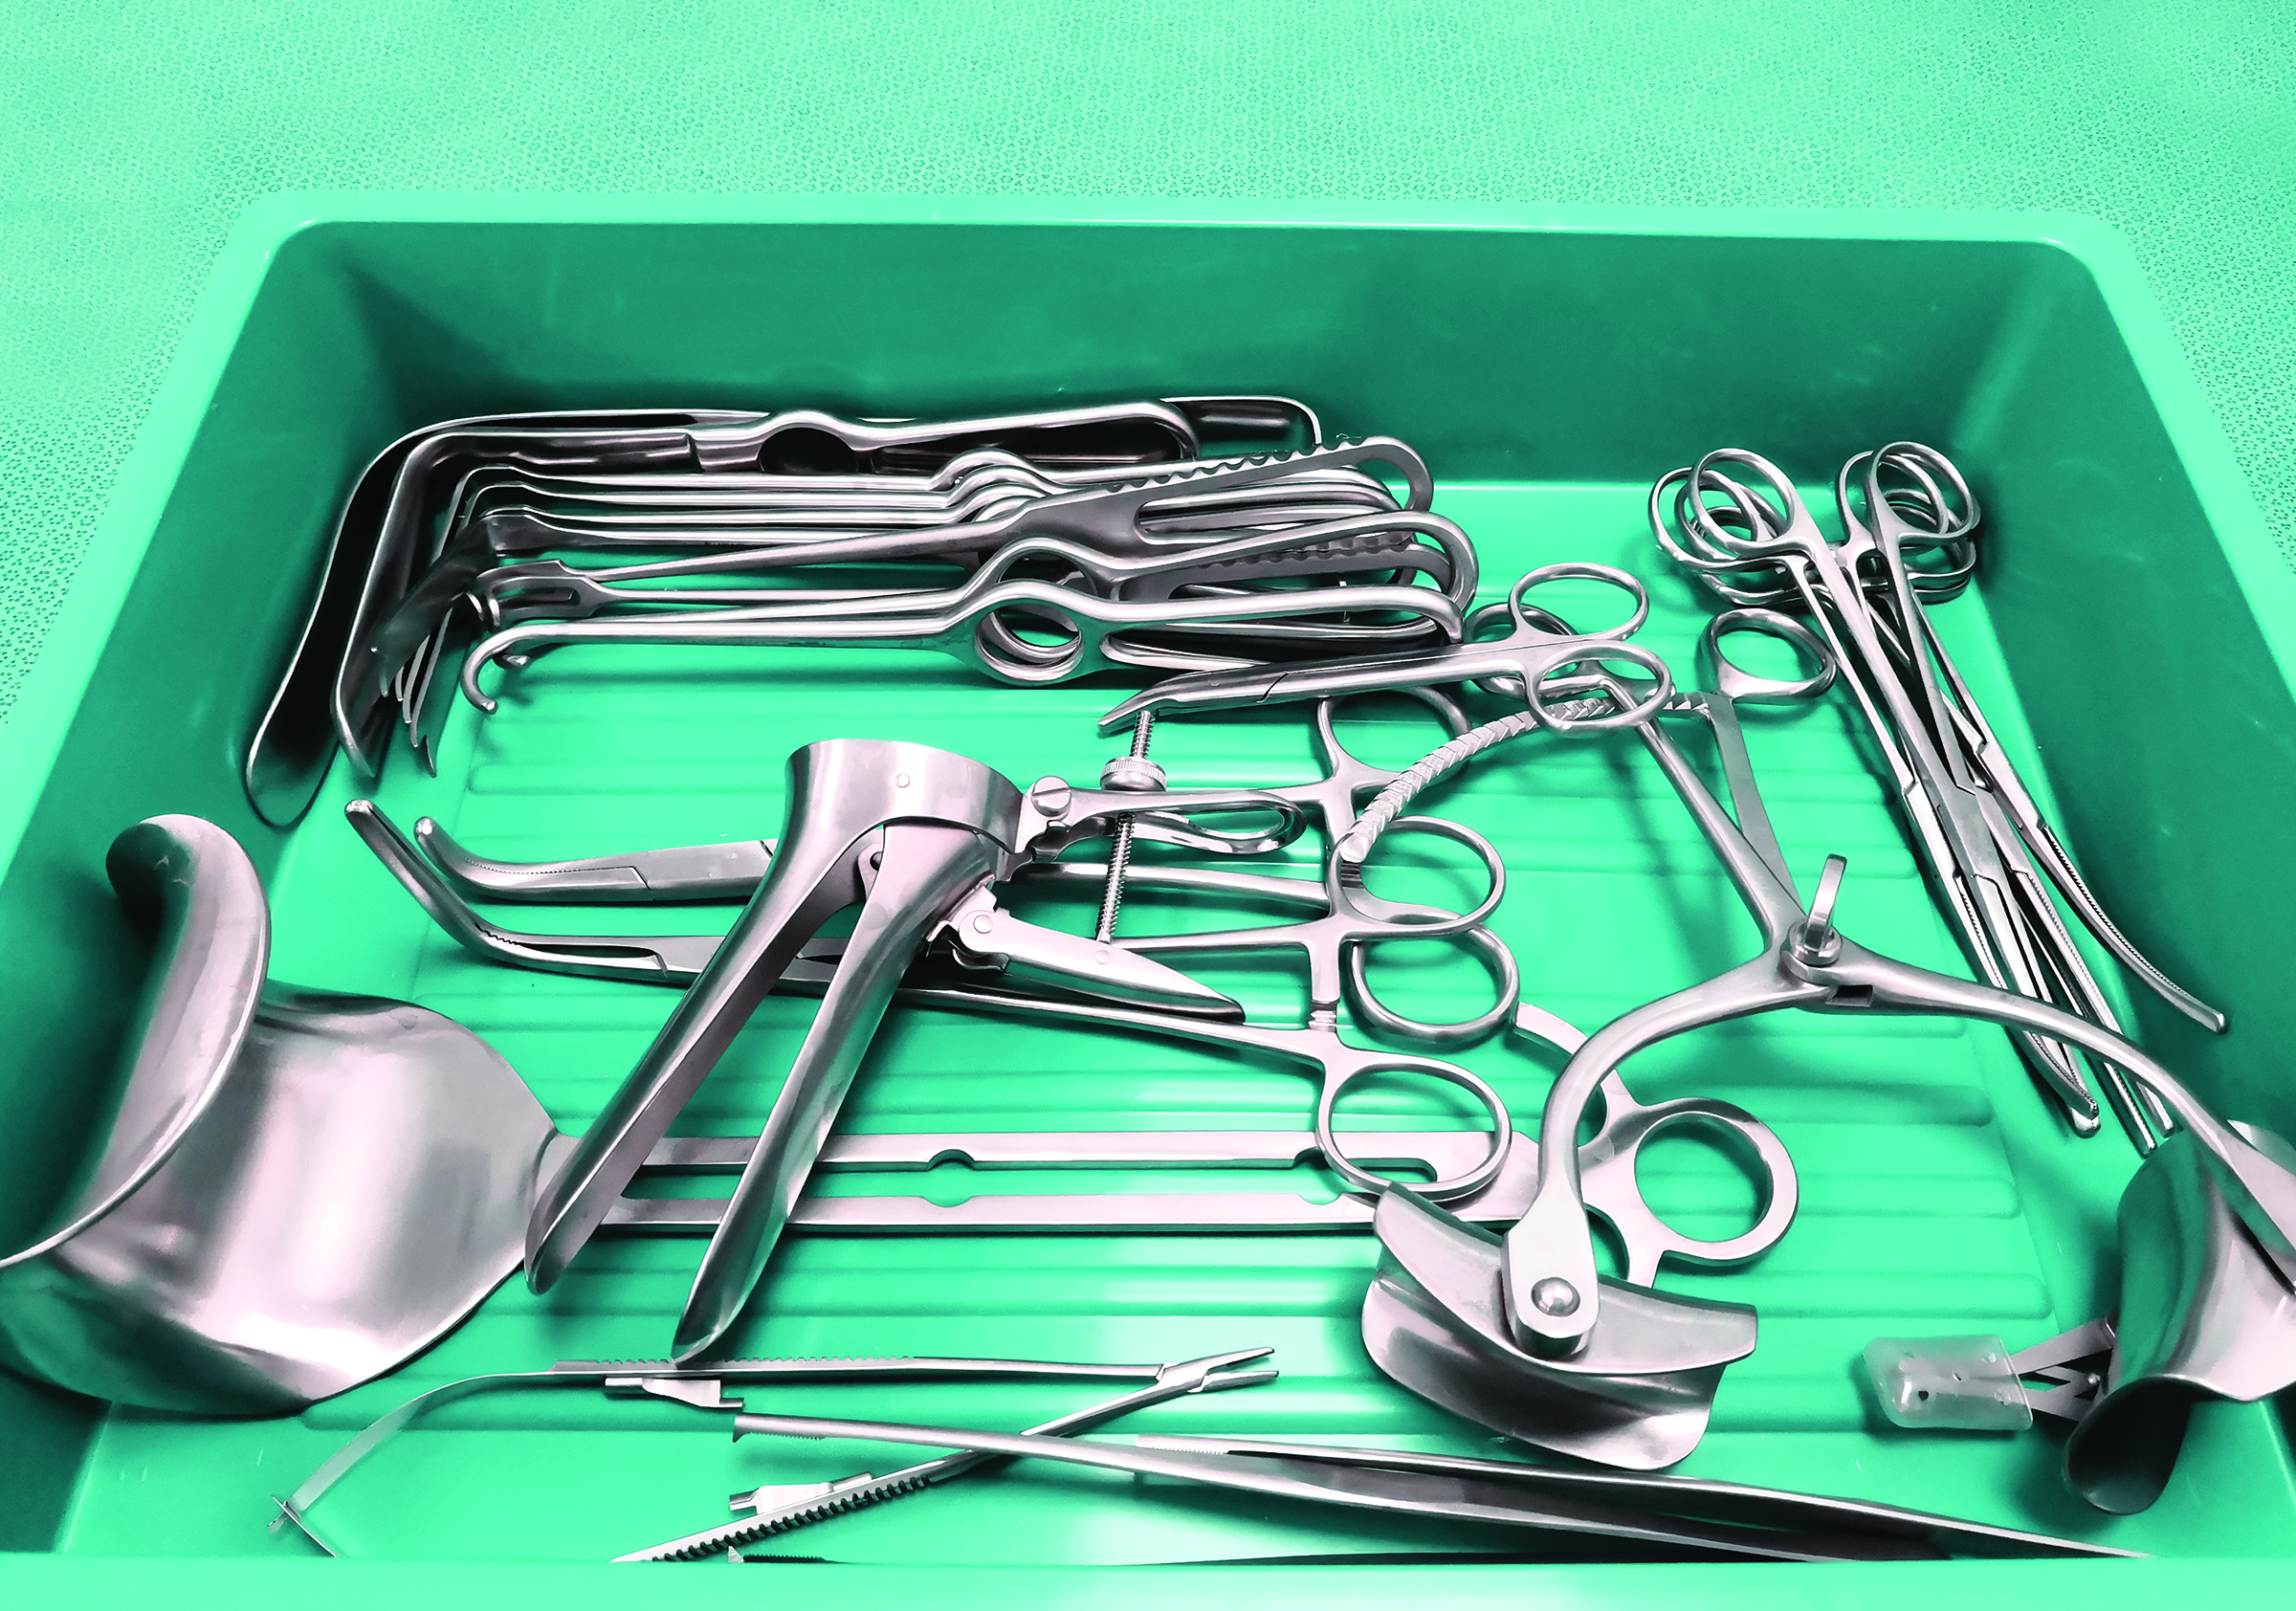 Medical tools